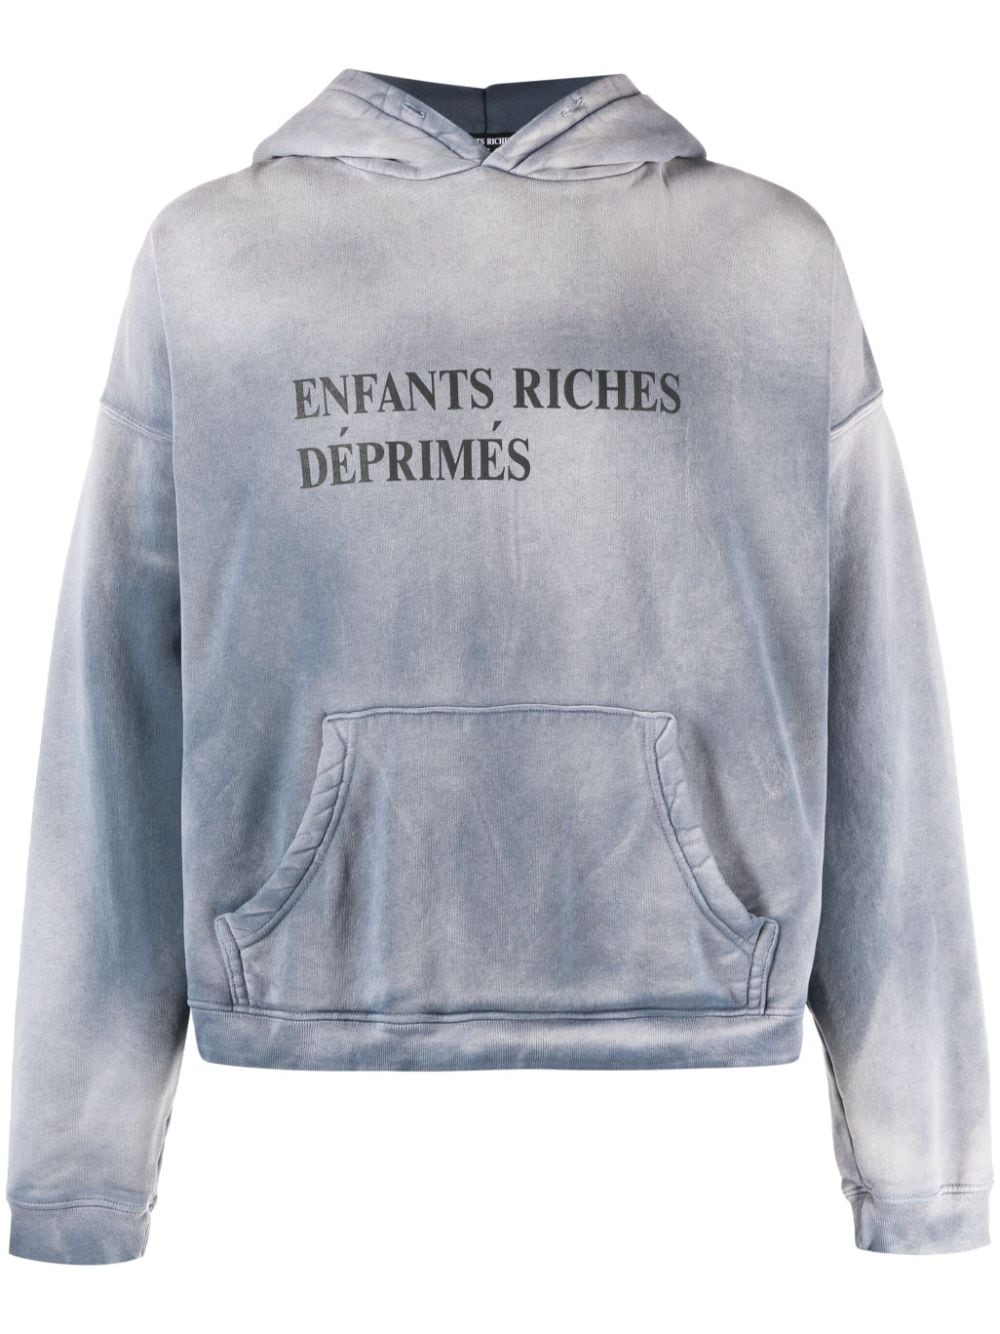 Enfants Riches Déprimés ENFANTS RICHES DÉPRIMÉS- Sweatshirt With Print